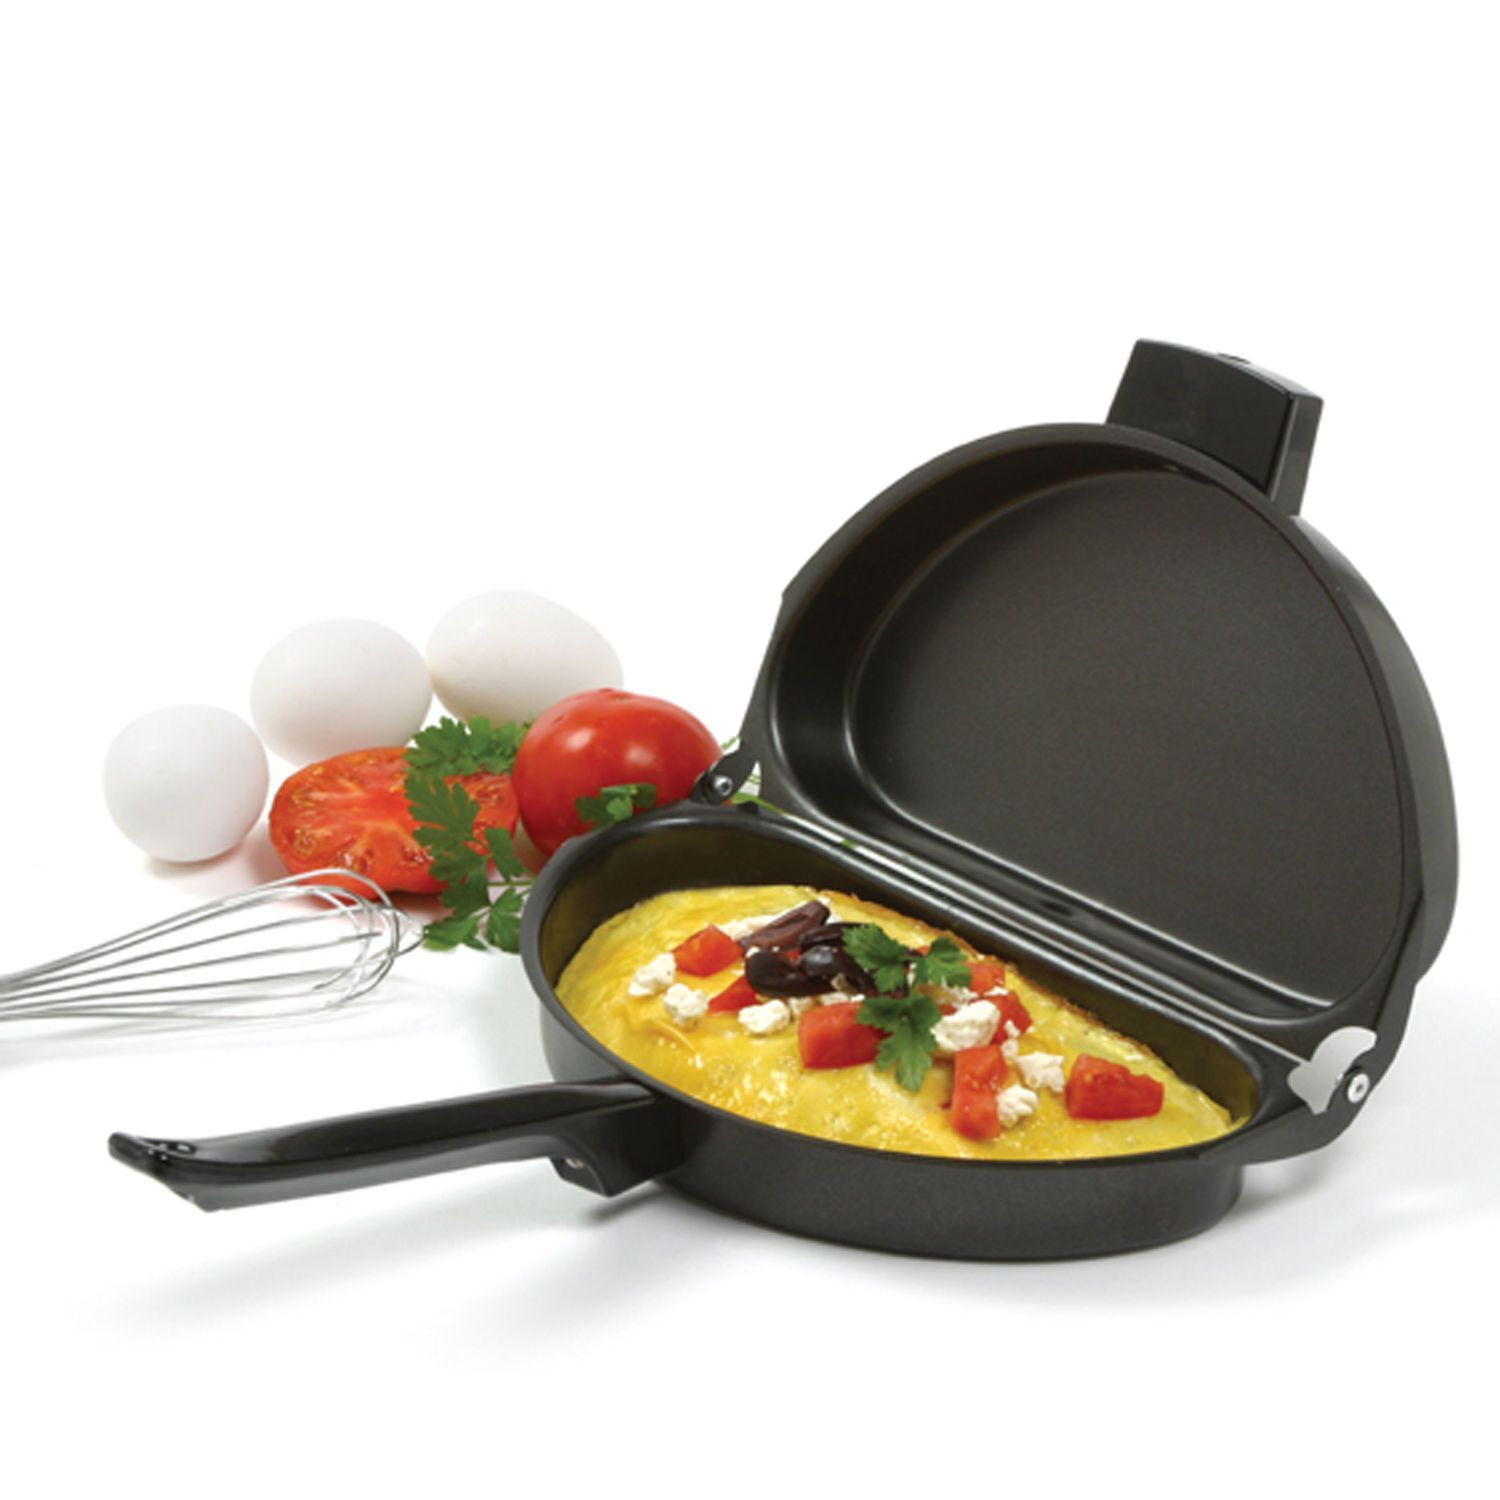 Buy Omelette Pan with 3-Egg Poacher Online - PurpleSpoilz Australia